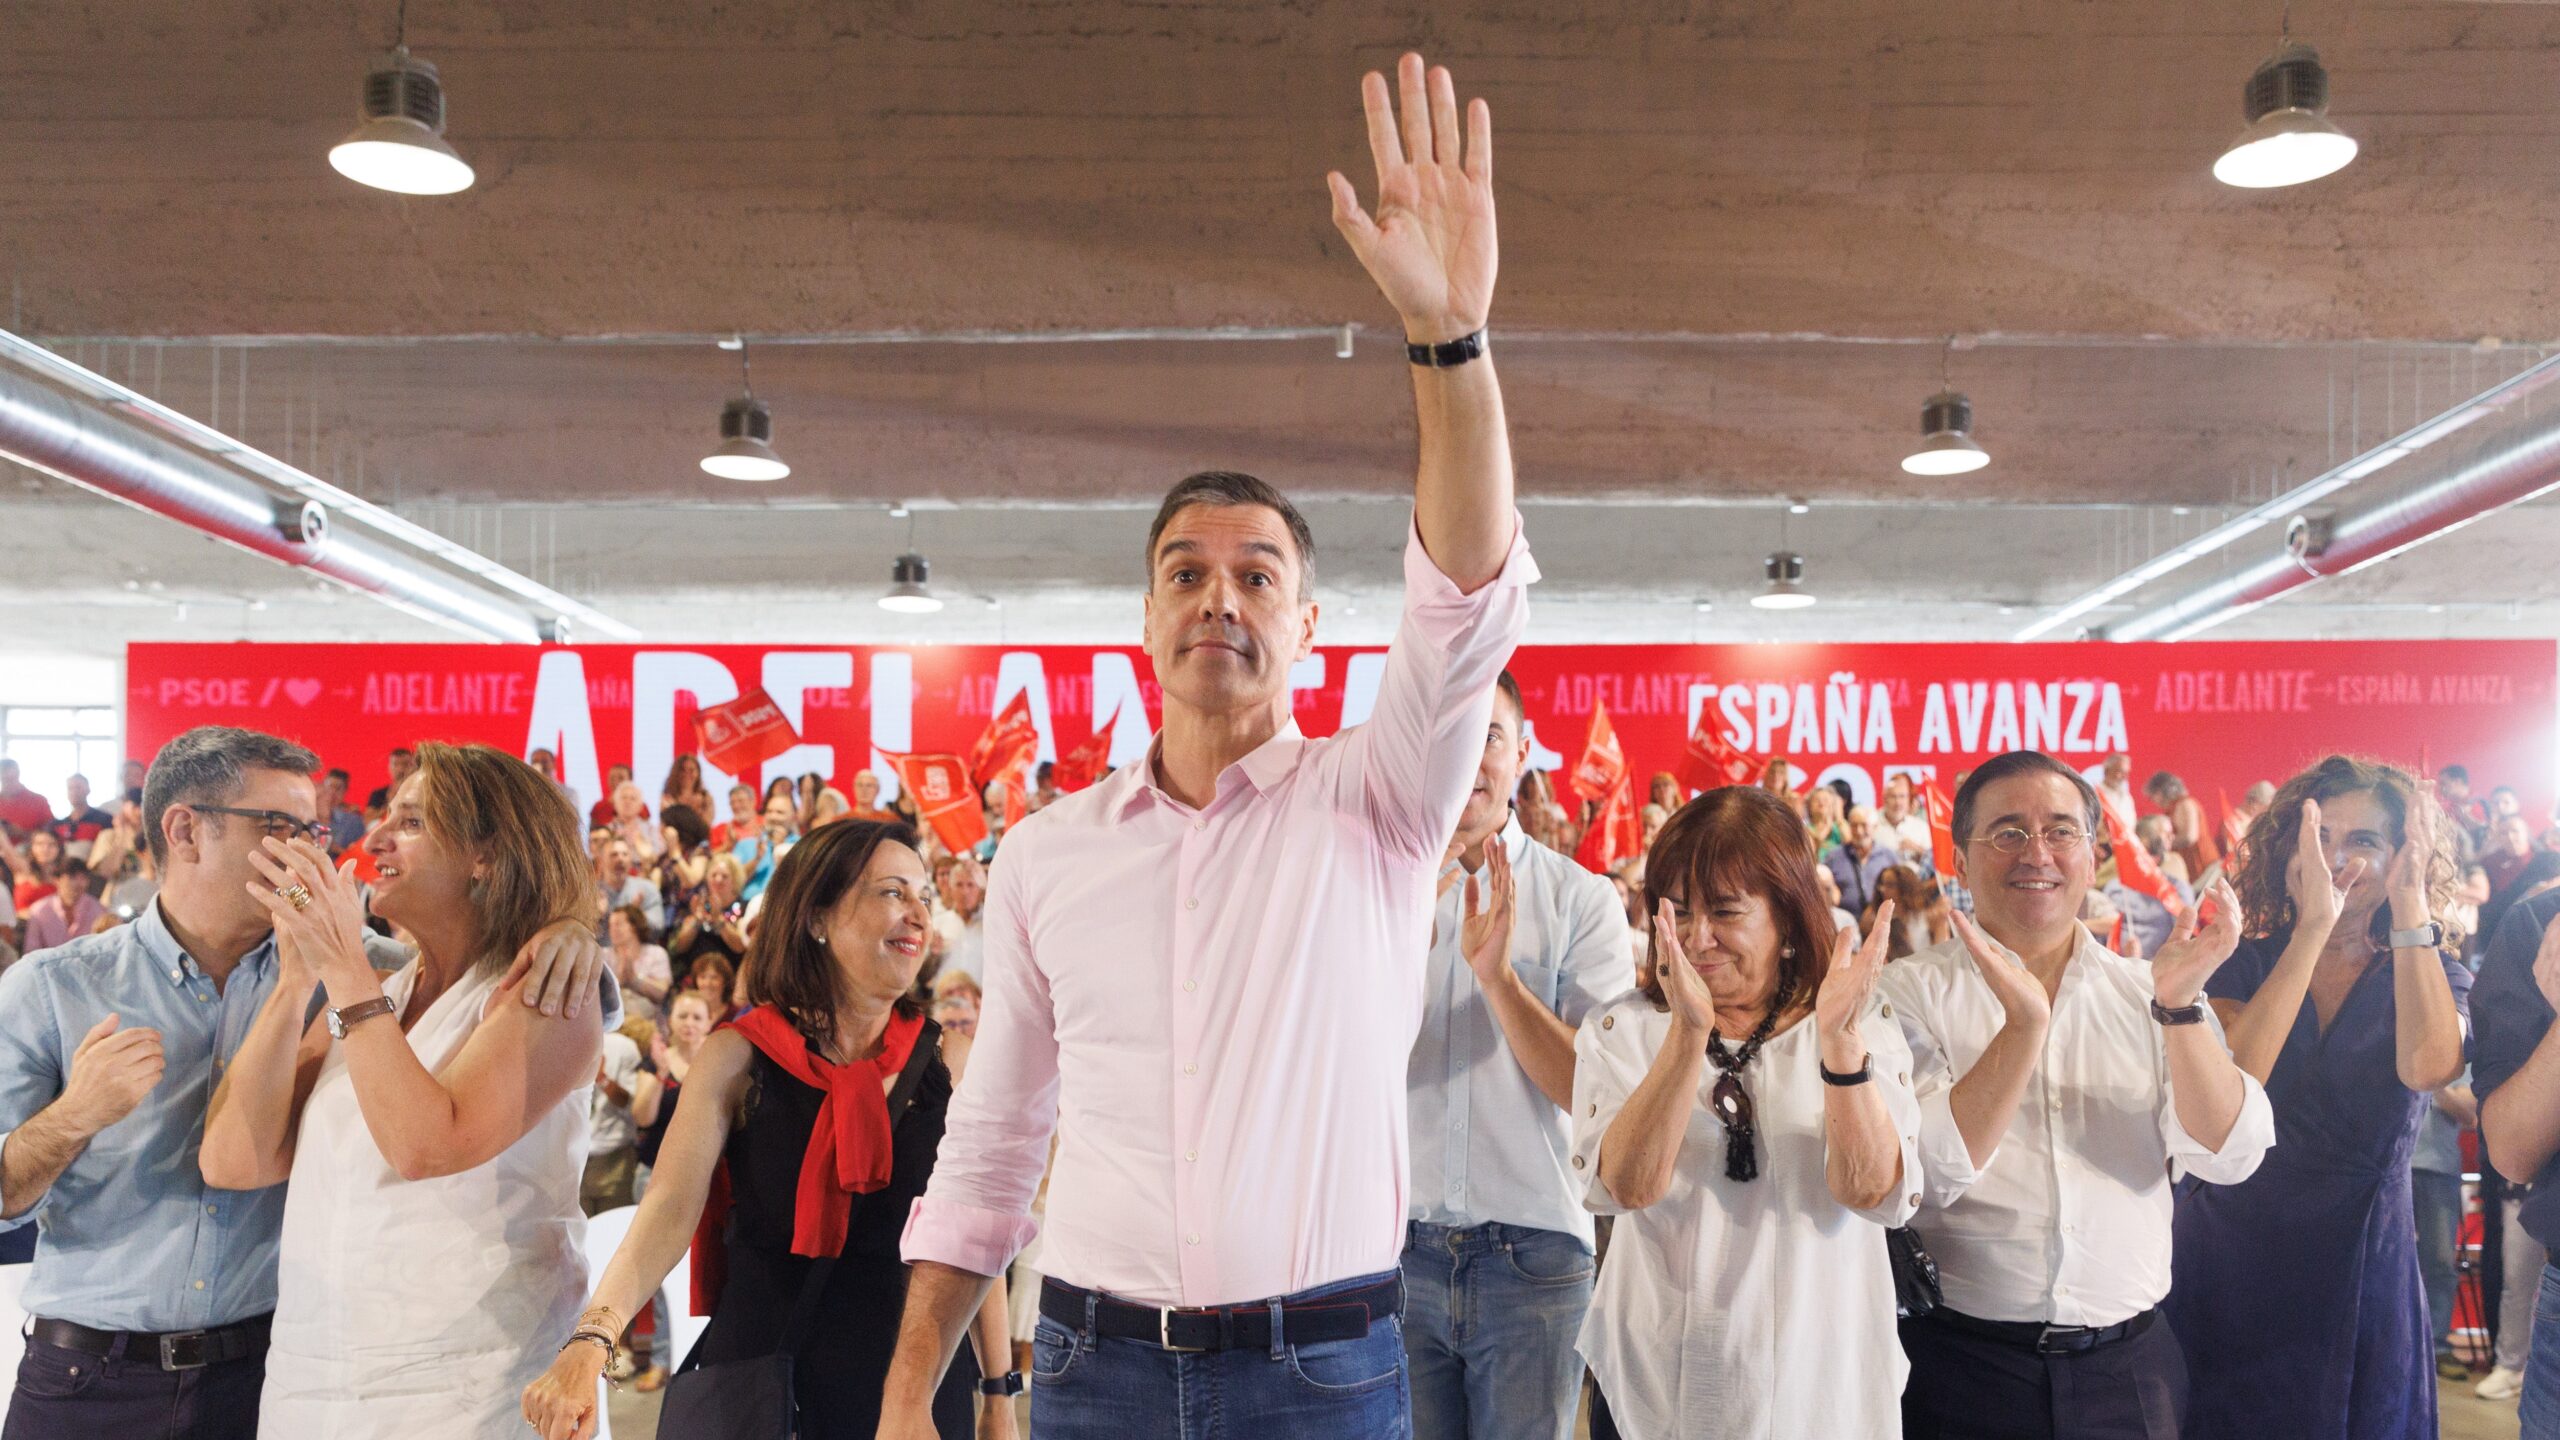 I socialisti esultano per la mancata vittoria della destra: "No pasaran"